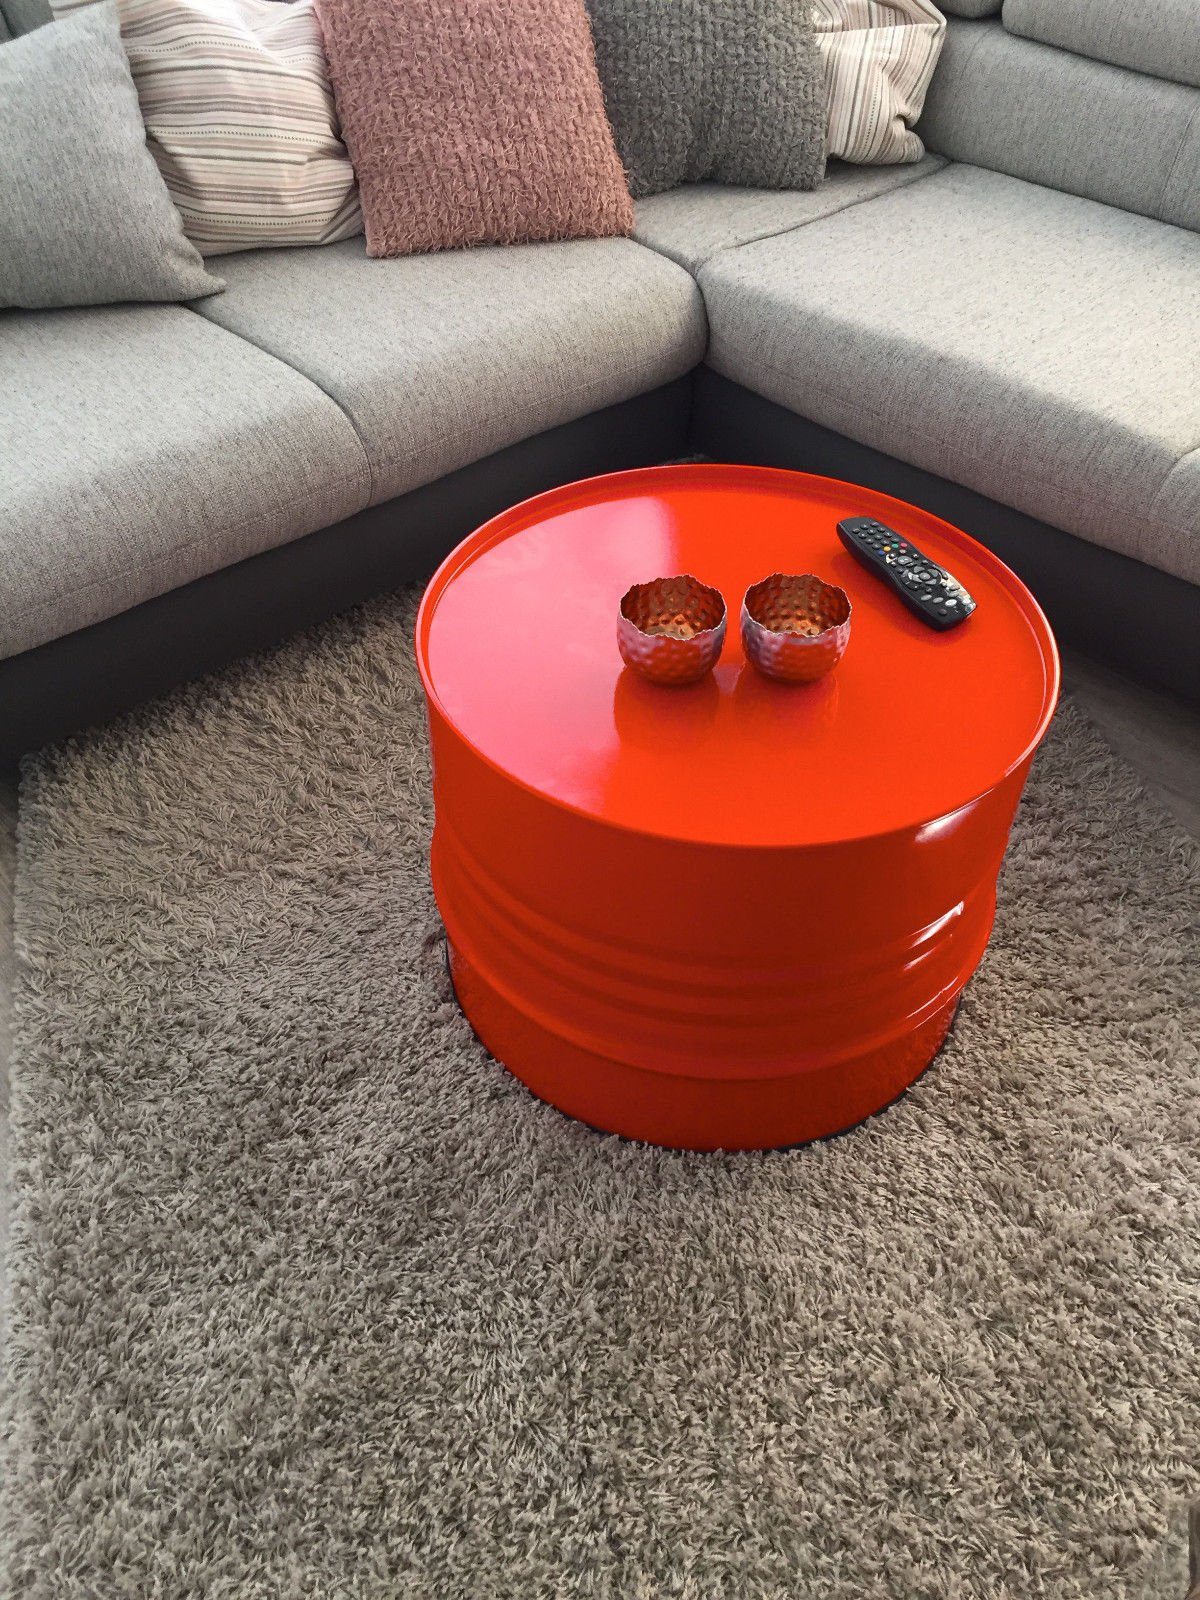 SRM Design Beistelltisch Fassmöbel Beistelltisch Tisch Fass Möbel Couchtisch Orange Ø 57cm